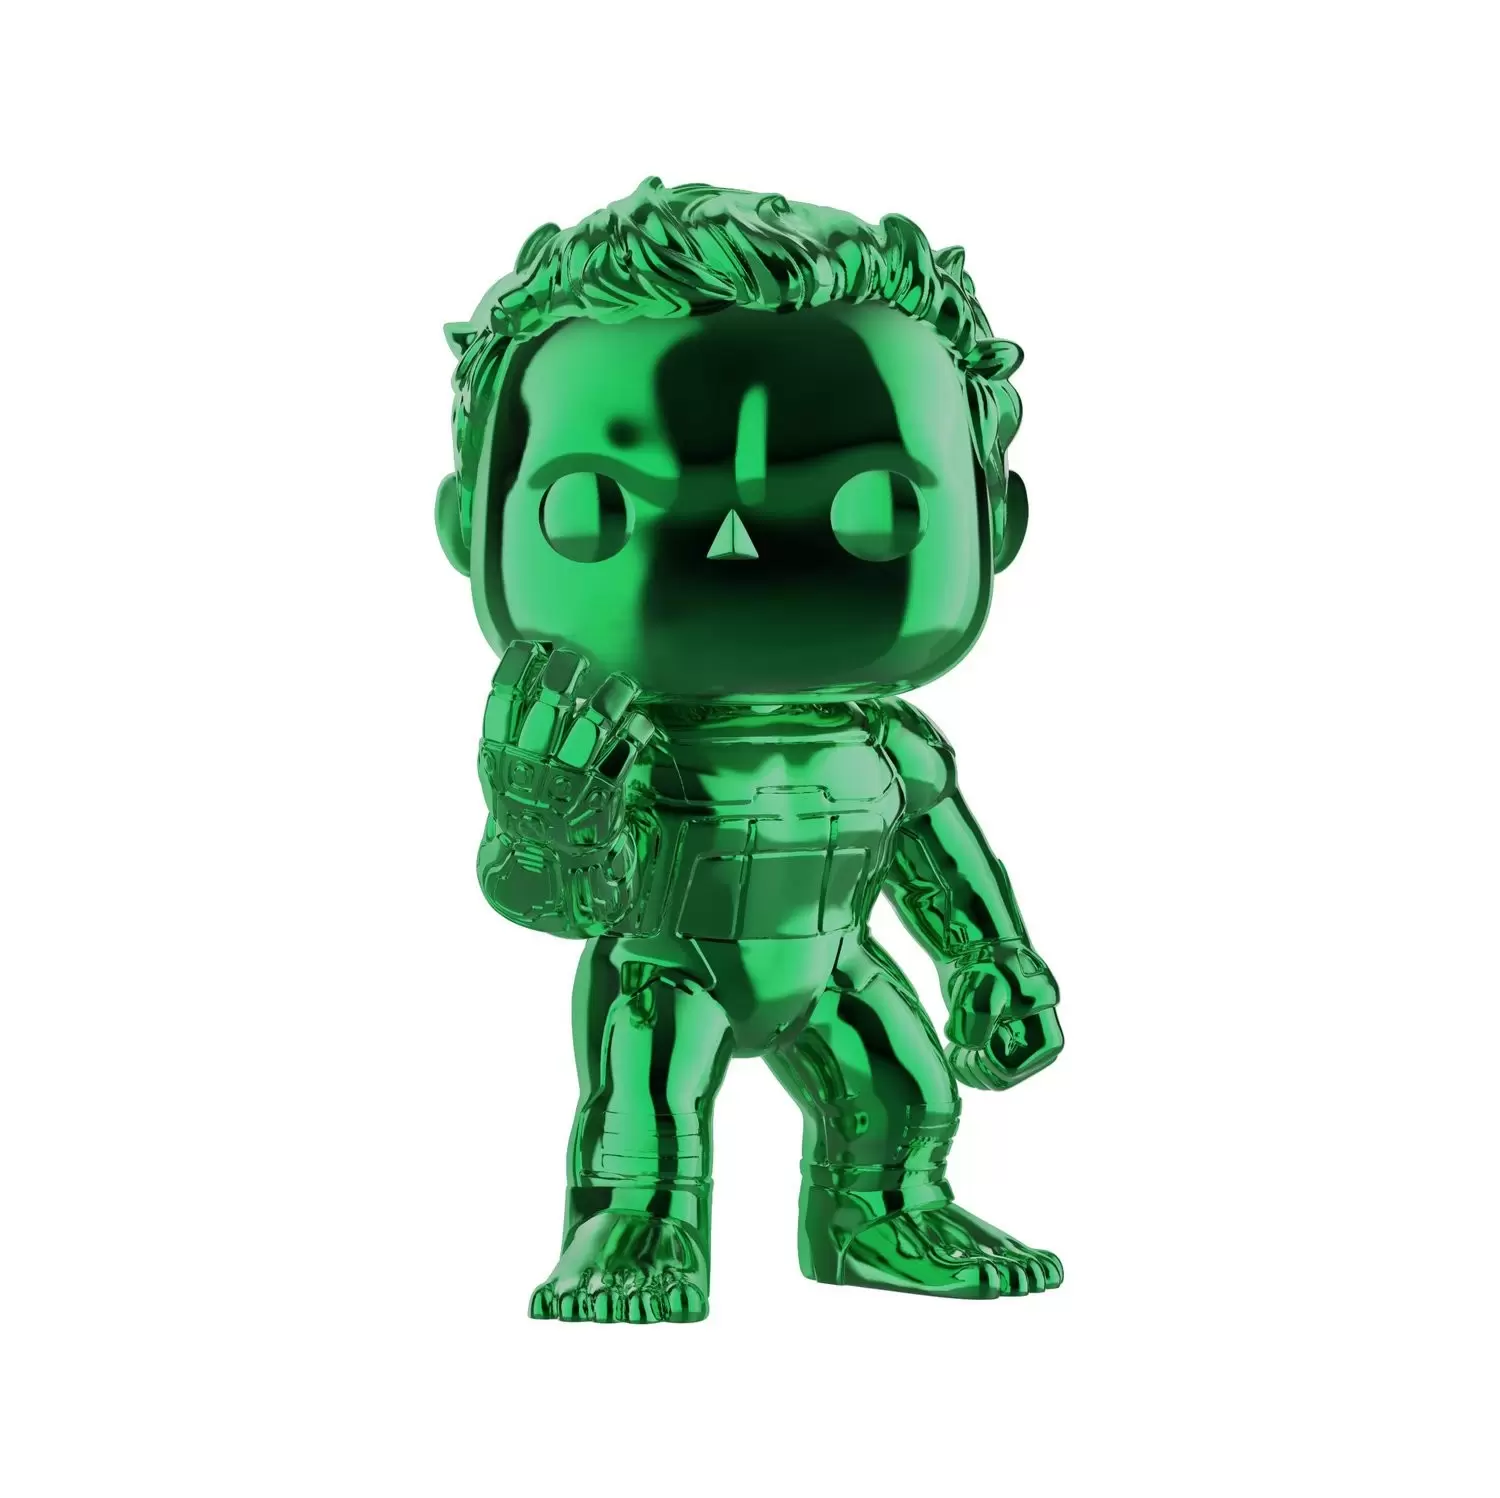 POP! MARVEL - Avengers Endgame - Hulk Green Chrome